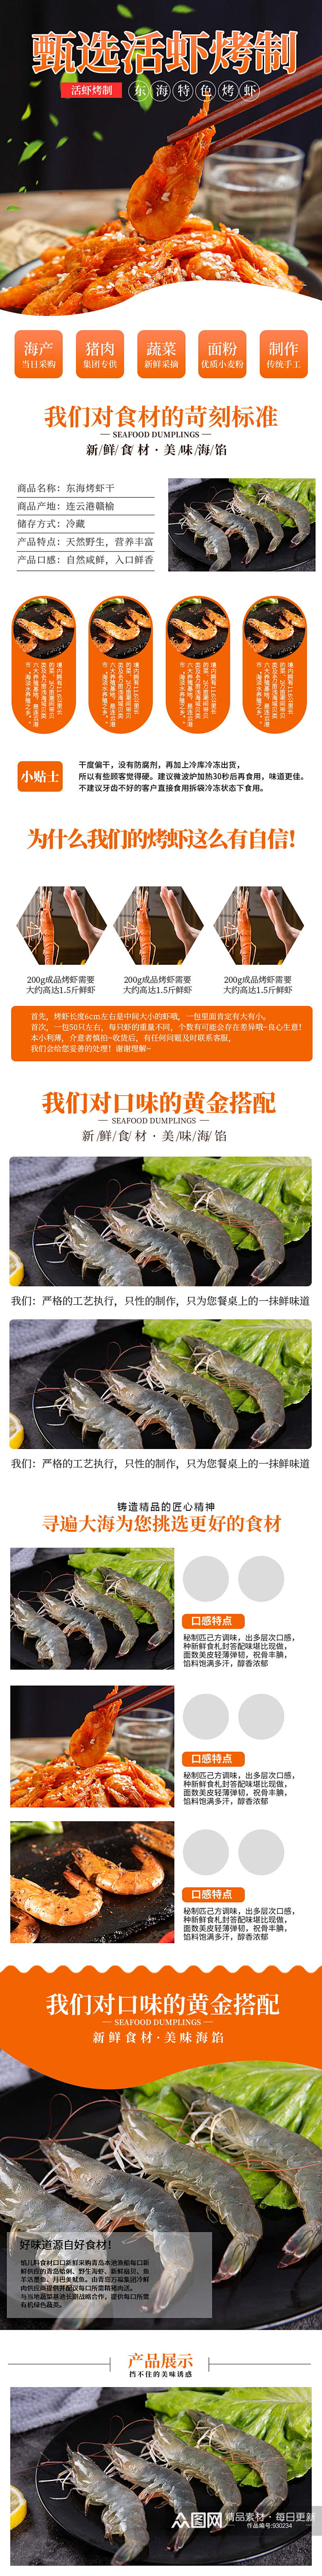 淘宝东海烤虾干海鲜干货特产零食详情页素材